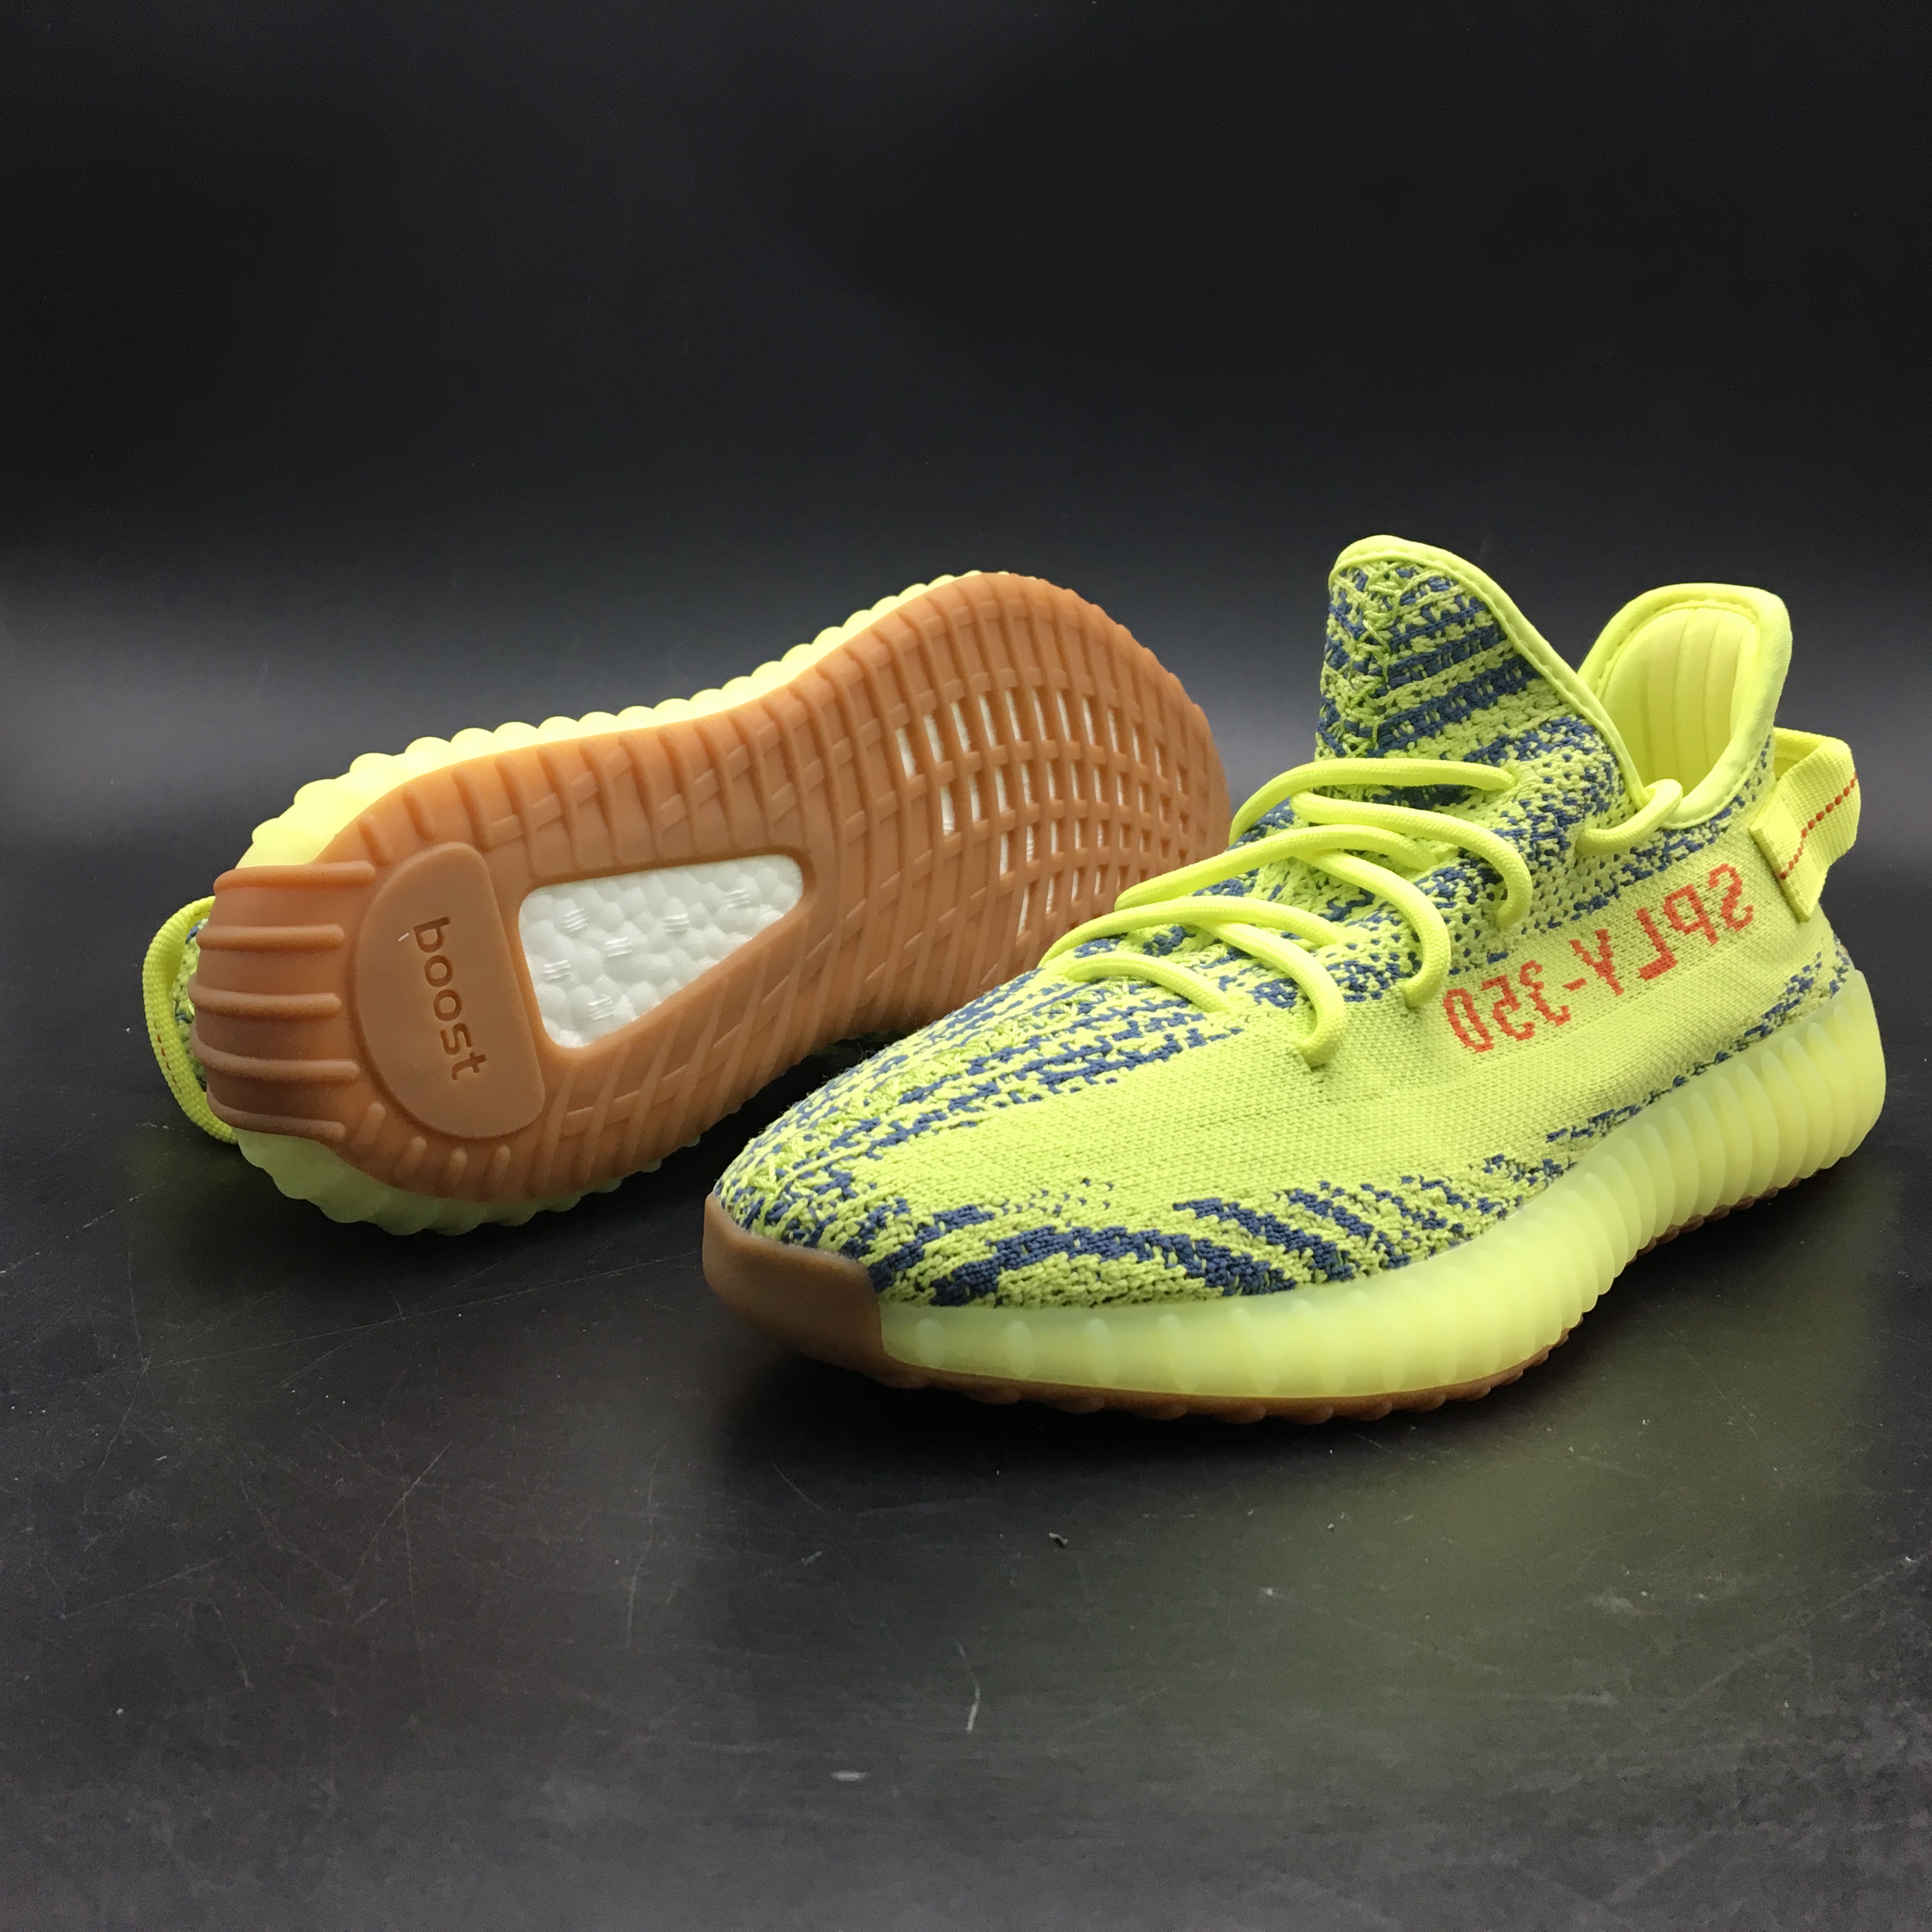 Adidas Originals Yeezy Boost 350 V2 Yebra B37572 11 - kickbulk.co